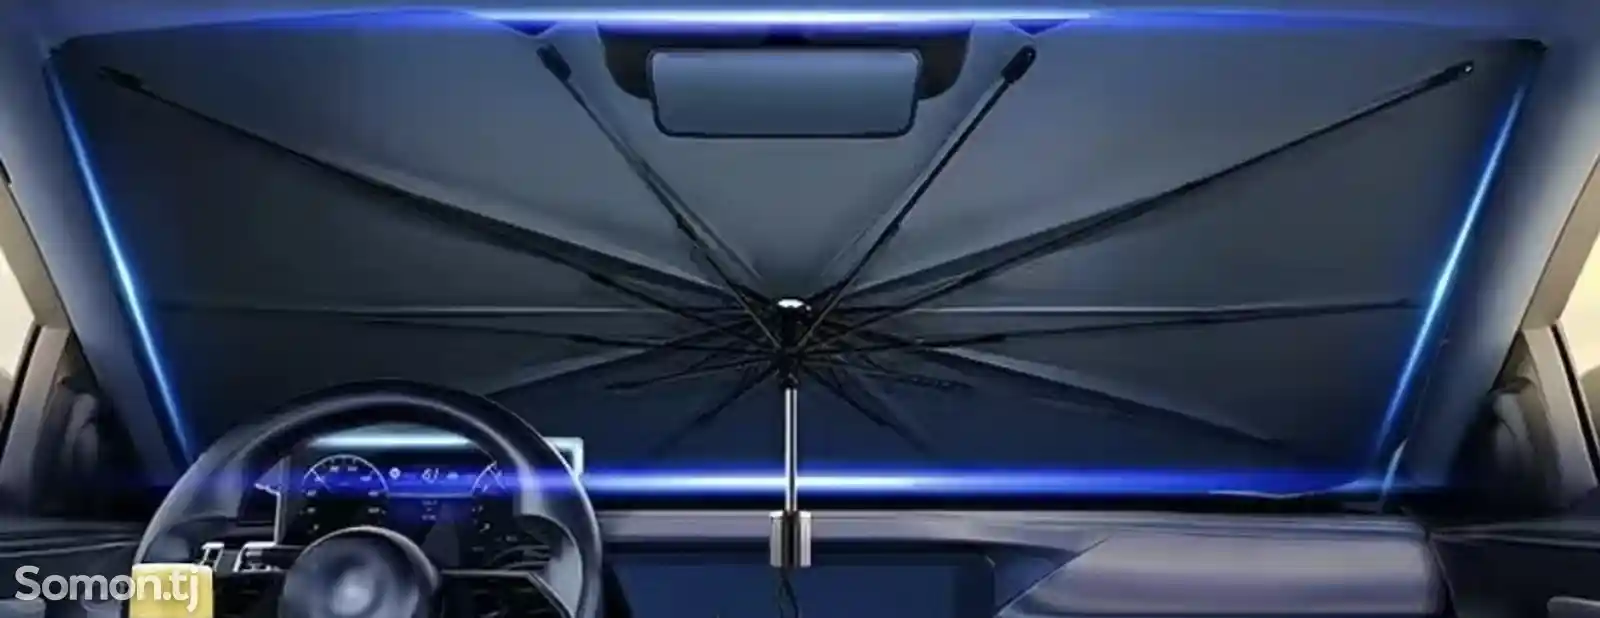 Зонтик для стекло автомобиля-2